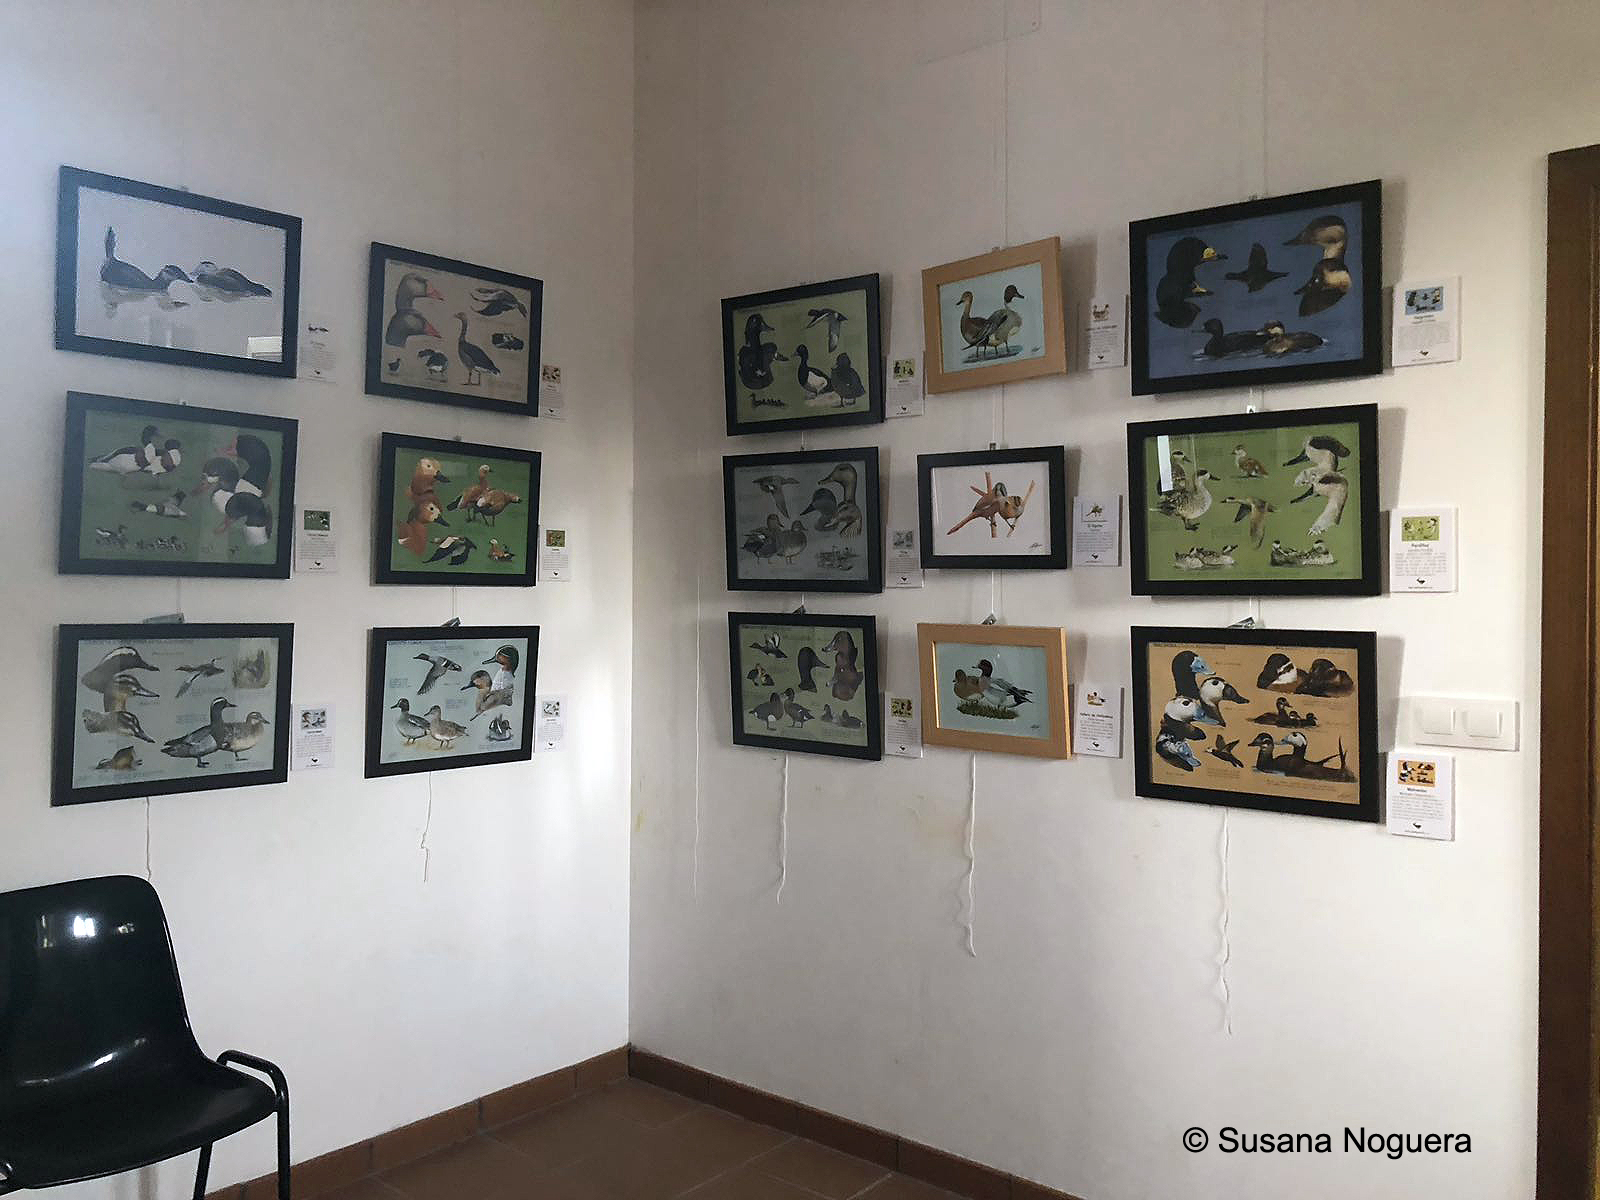 Una esquina llena de fotos en la exposición que ahora mismo hay en la EOT. Imagen: Susana Noguera